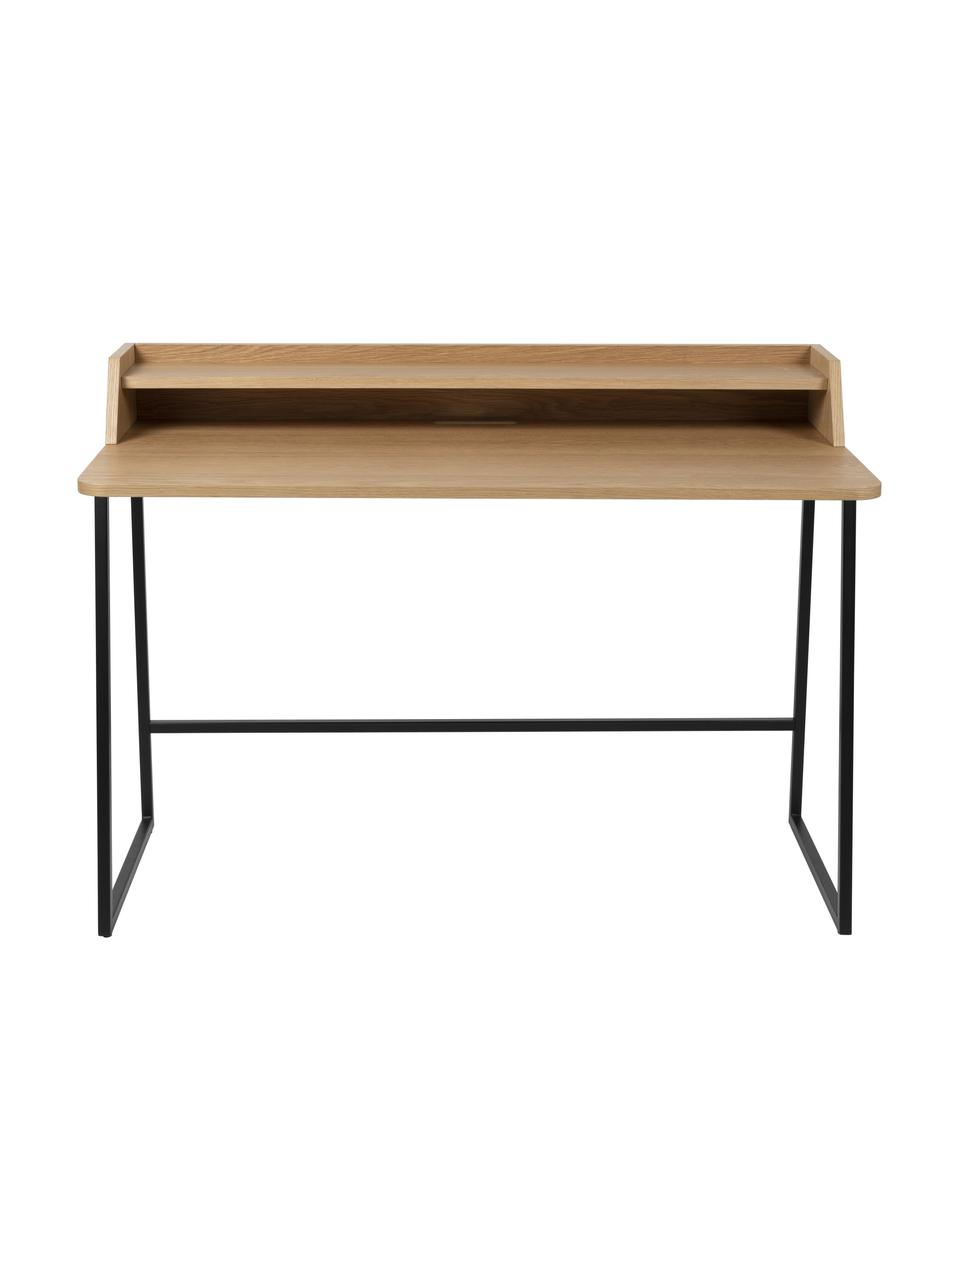 Schreibtisch Giorgio aus Holz und Metall, Gestell: Metall, pulverbeschichtet, Holz, Schwarz, B 120 x T 60 cm